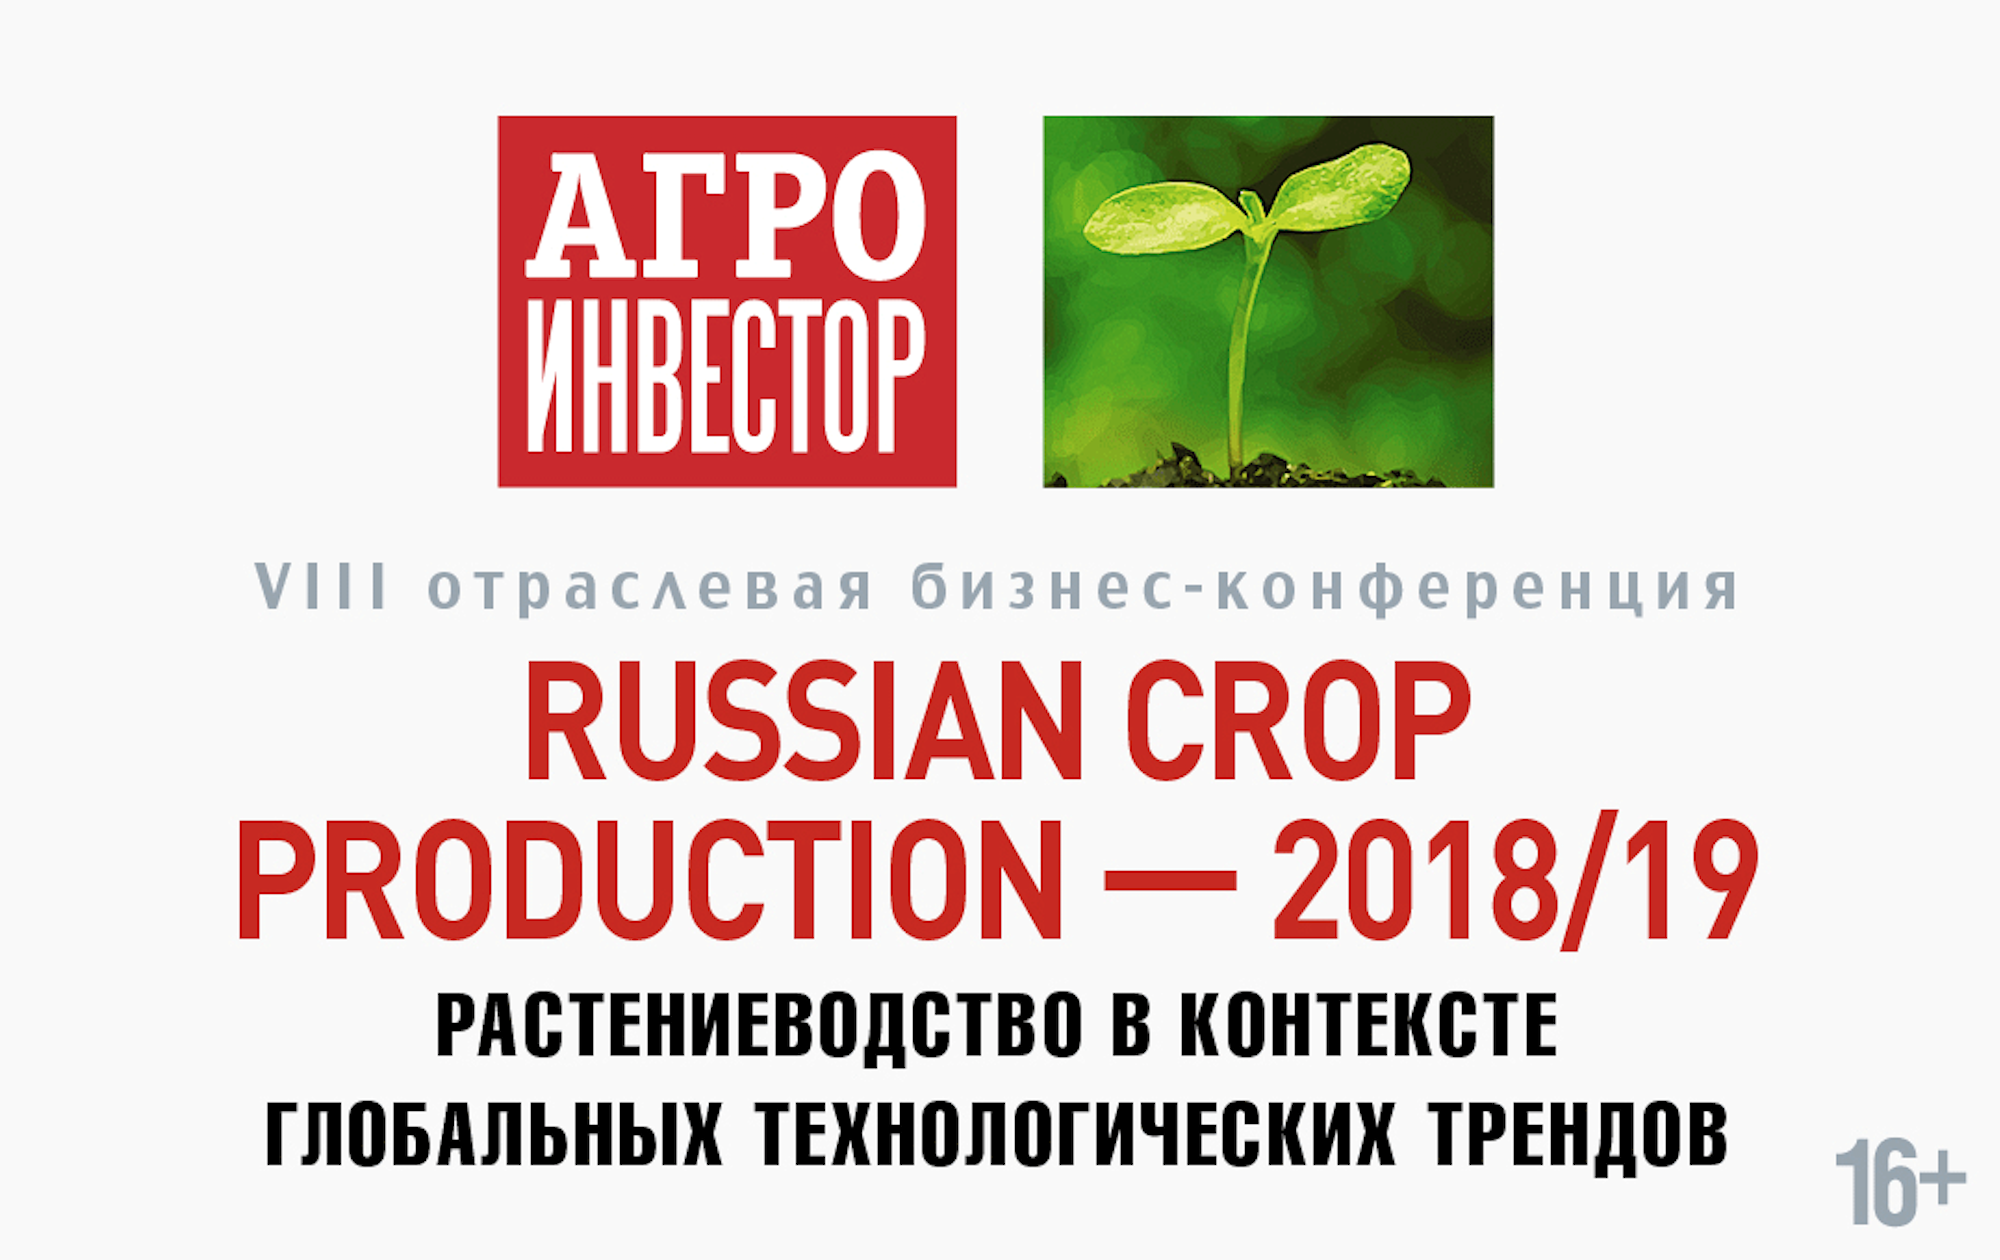 21 сентября 2018  состоится Russian Crop Production — 2018/19 VIII отраслевая бизнес-конференция «Растениеводство в контексте глобальных технологических трендов»